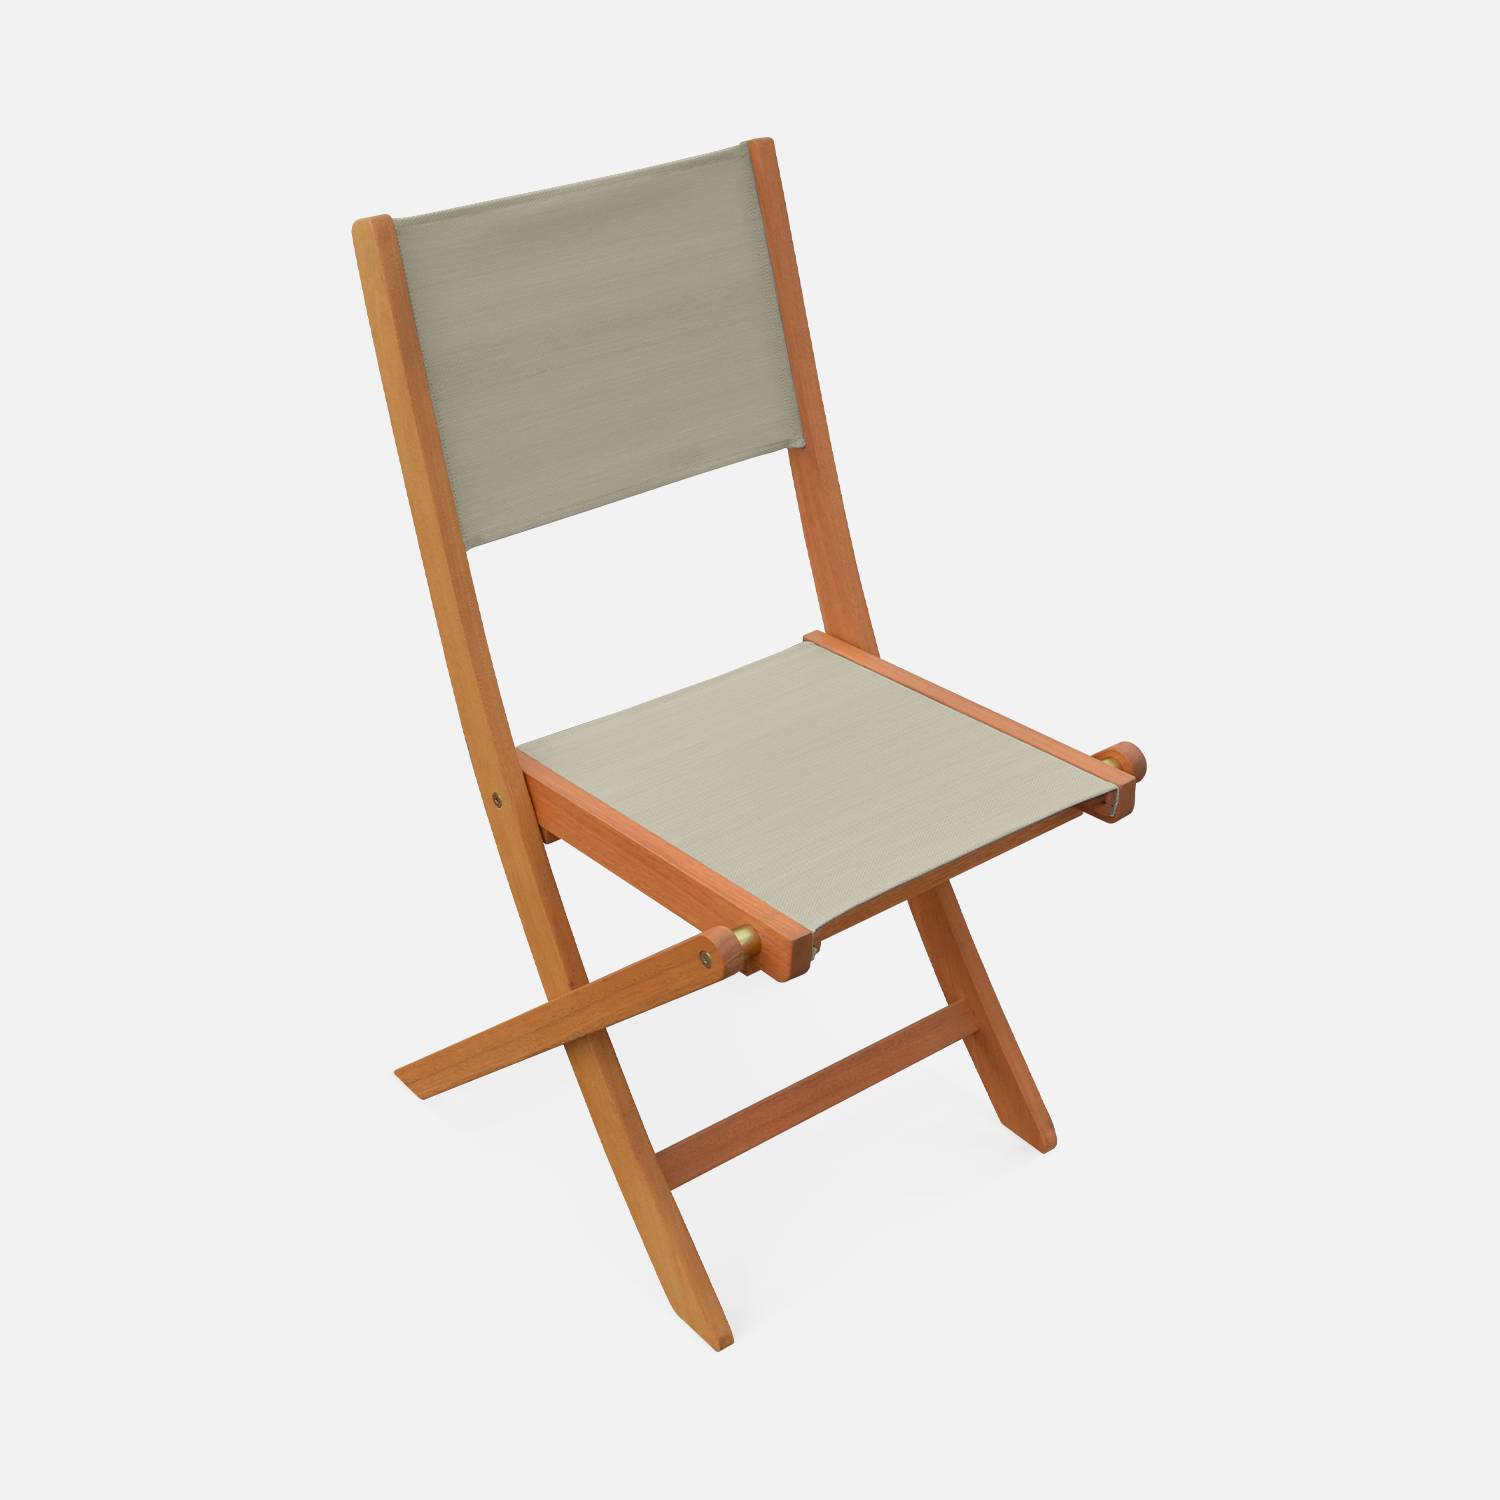 Sedie da giardino, in legno e textilene - modello: Almeria, colore: Grigio/Talpa - 2 sedie pieghevoli in legno di eucalipto FSC oliato e textilene Photo4